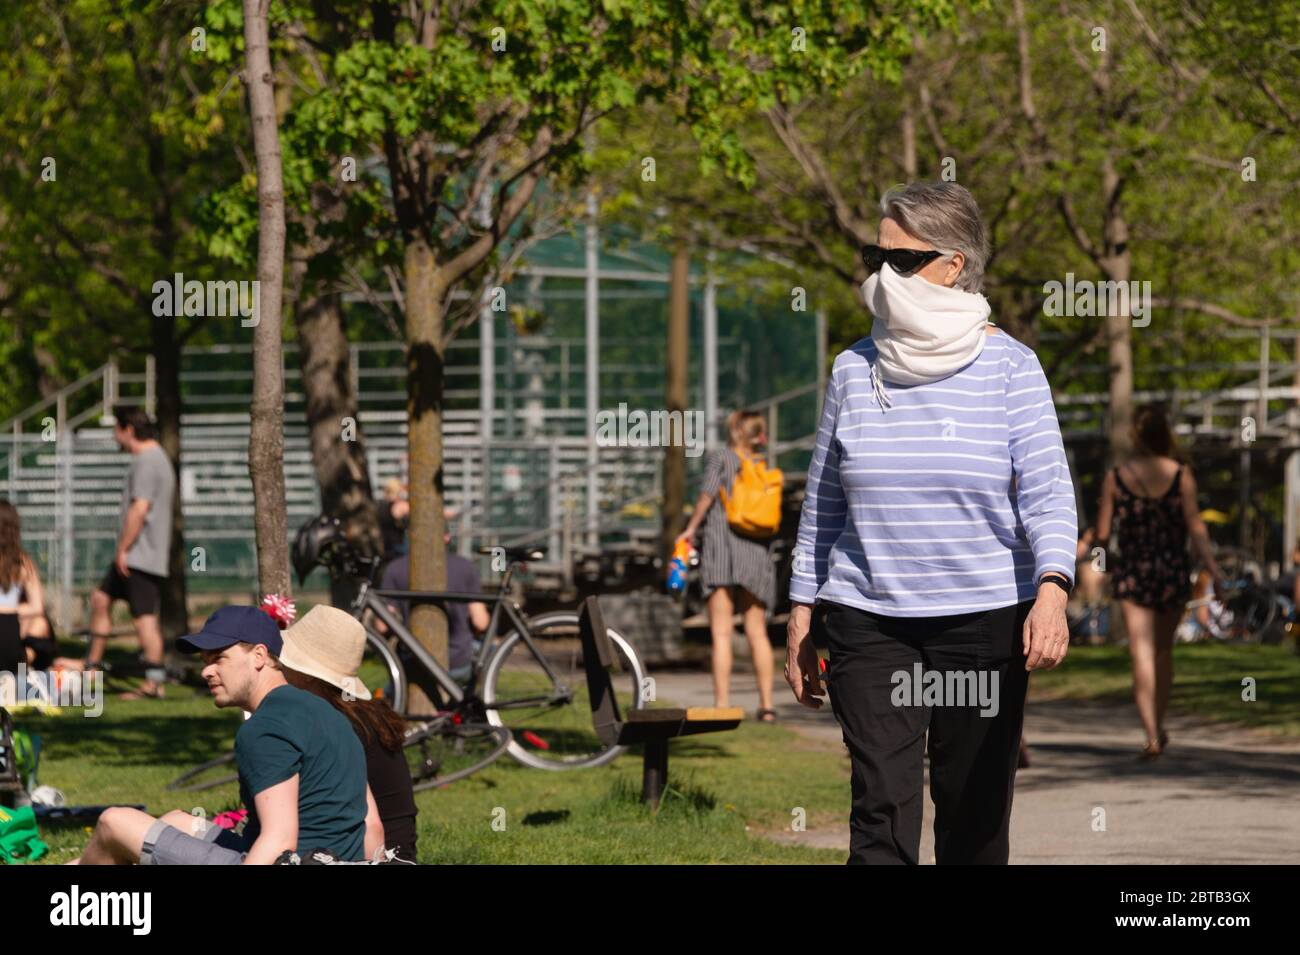 Montréal, CA - 23 mai 2020 : Femme avec écharpe pour la protection contre la marche de COVID-19 dans le parc Laurier, comme beaucoup de jeunes sont assis sur l'herbe Banque D'Images